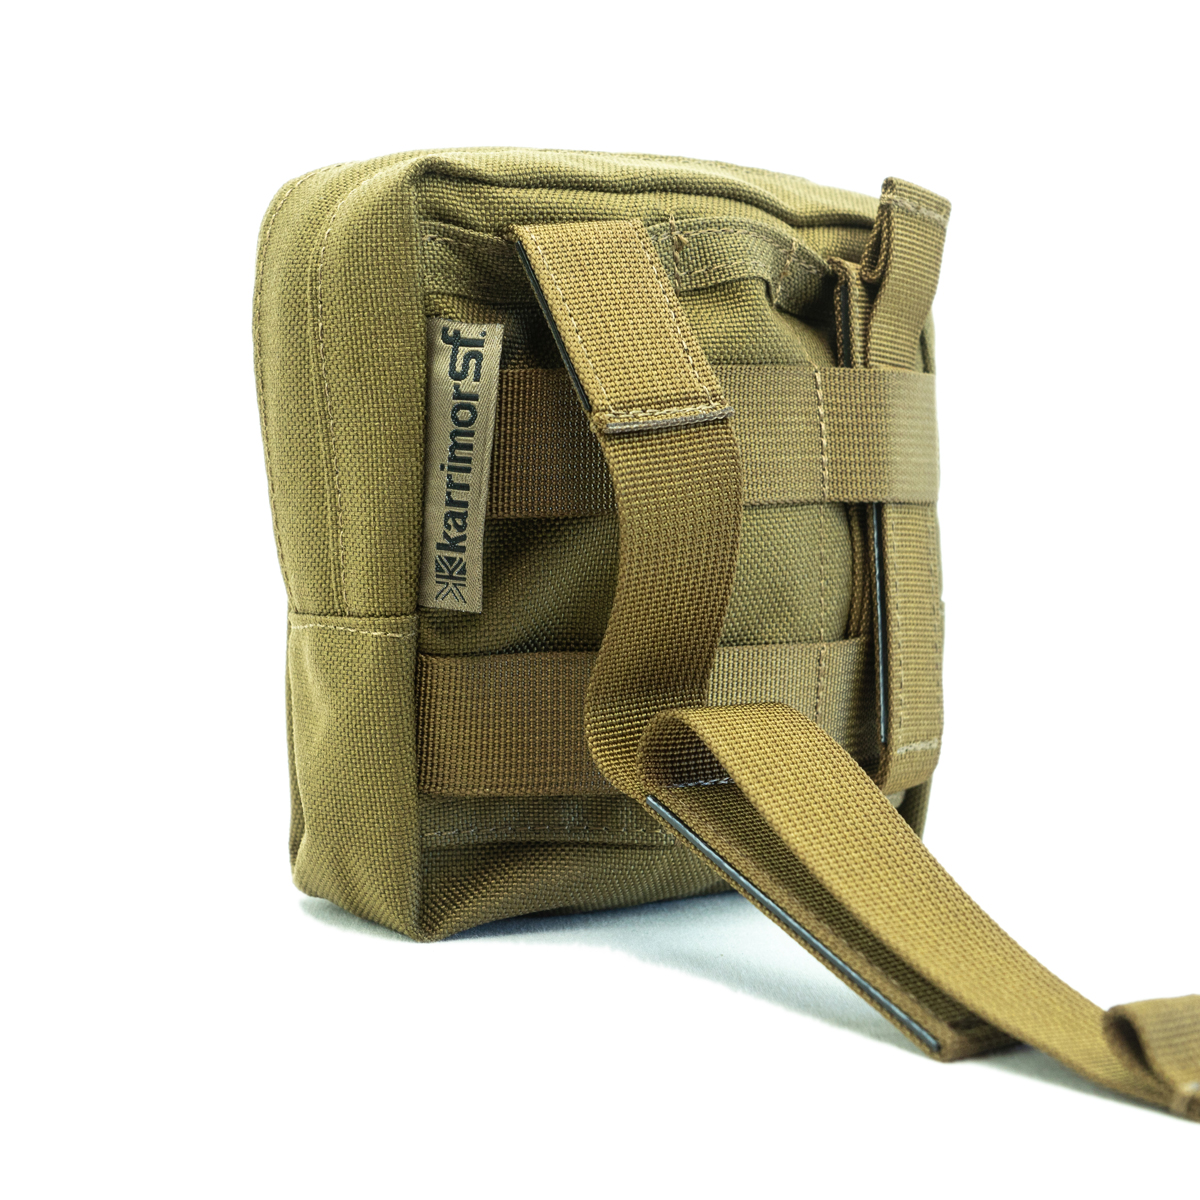 Predstavljamo vam vojaško torbico Predator Small Utility Pouch QR-Modular znamke Karrimor SF. Ta trpežna in robustna torbica zagotavlja maksimalno varnost, udobje in kakovost v vseh ekstremnih razmerah. Pritrditev s QR-Modularnim sistemom je enostavna, hk